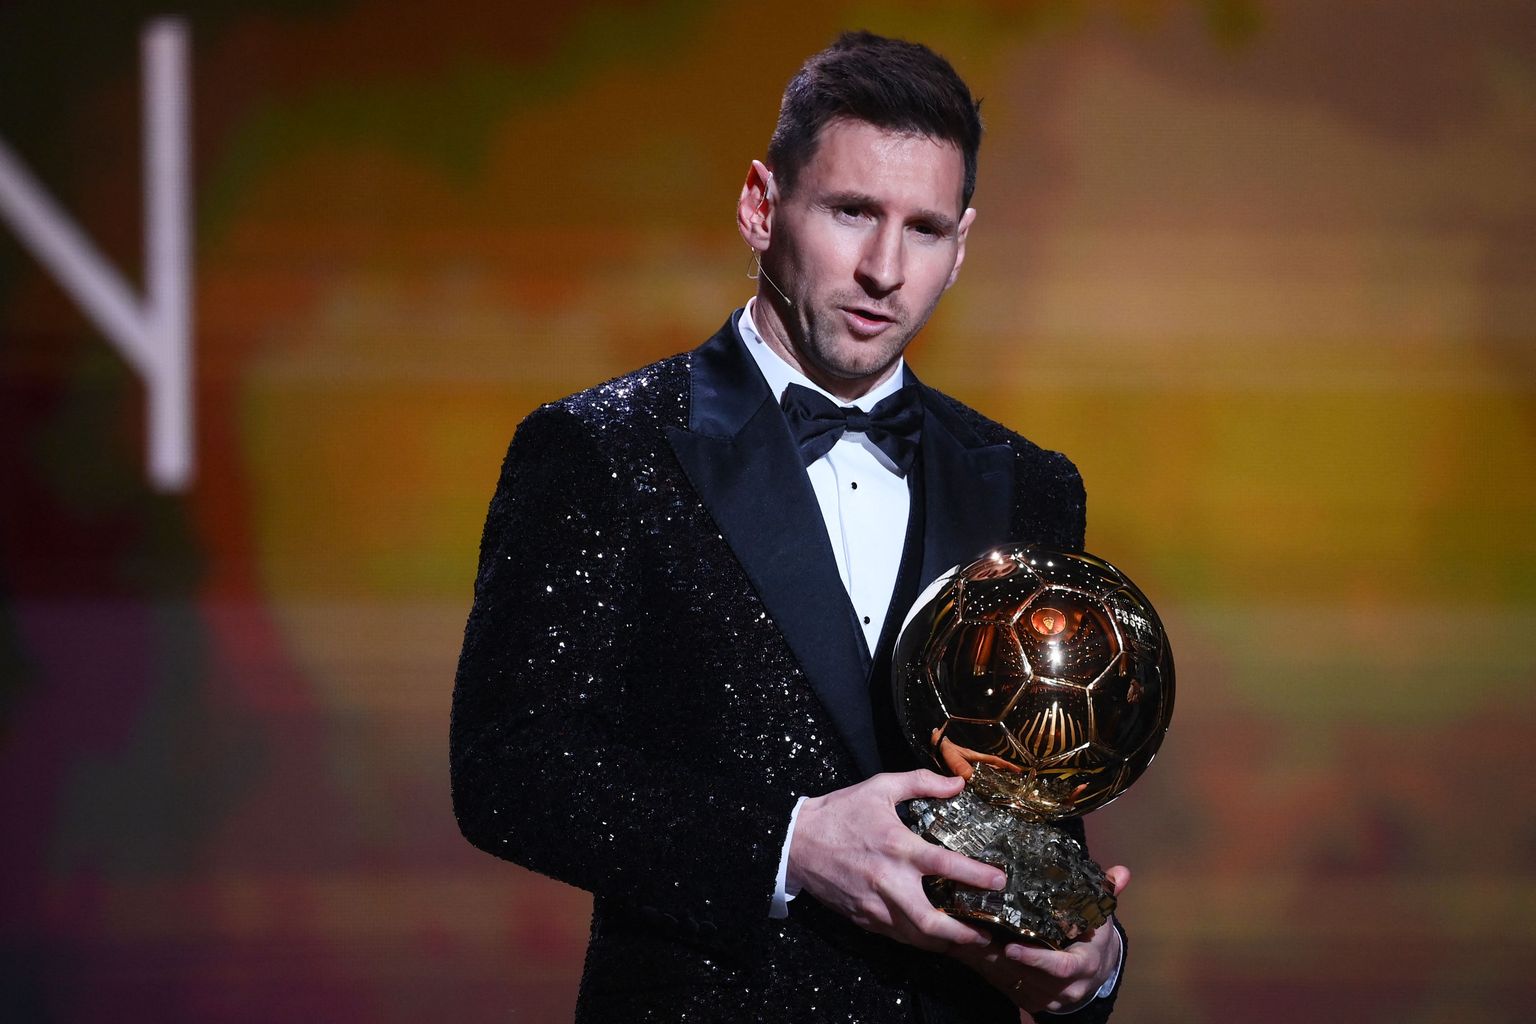 Lionel Messi jäi oma võidukõnes džentelmeniks, tunnustades mullu auhinnata jäänud Robert Lewandowskit.